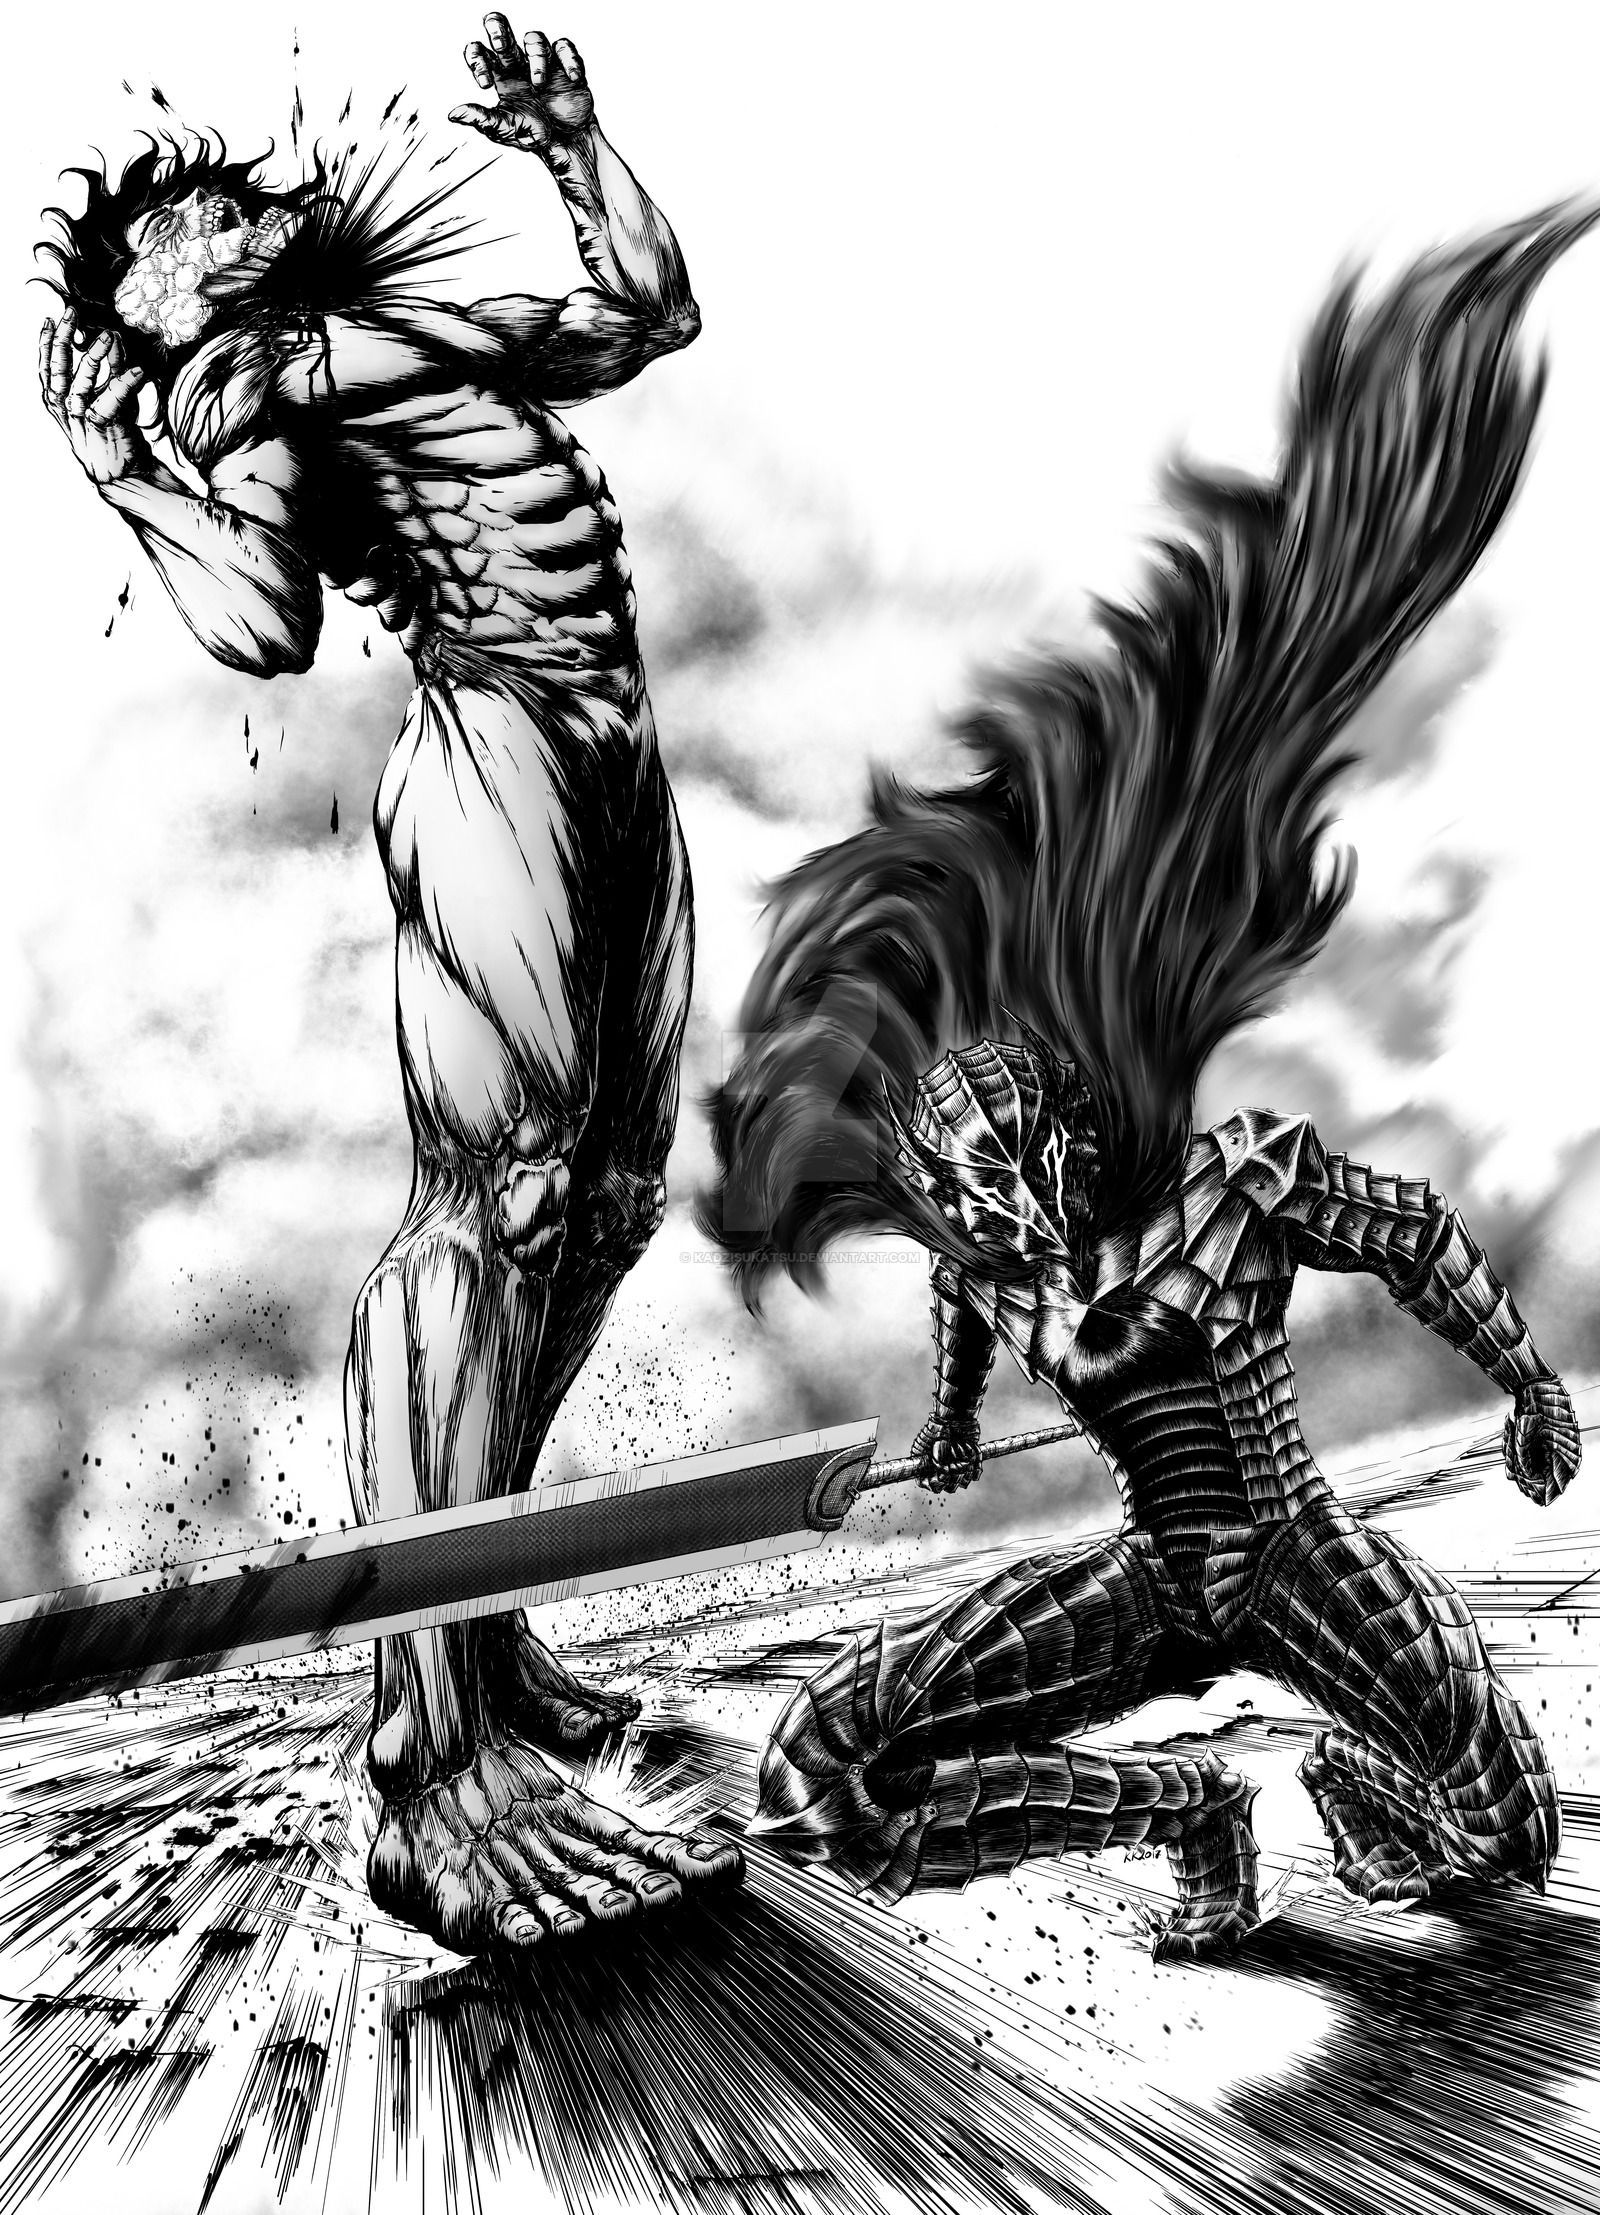 Berserk vs Attack On Titan.Guts vs Eren Yeager.